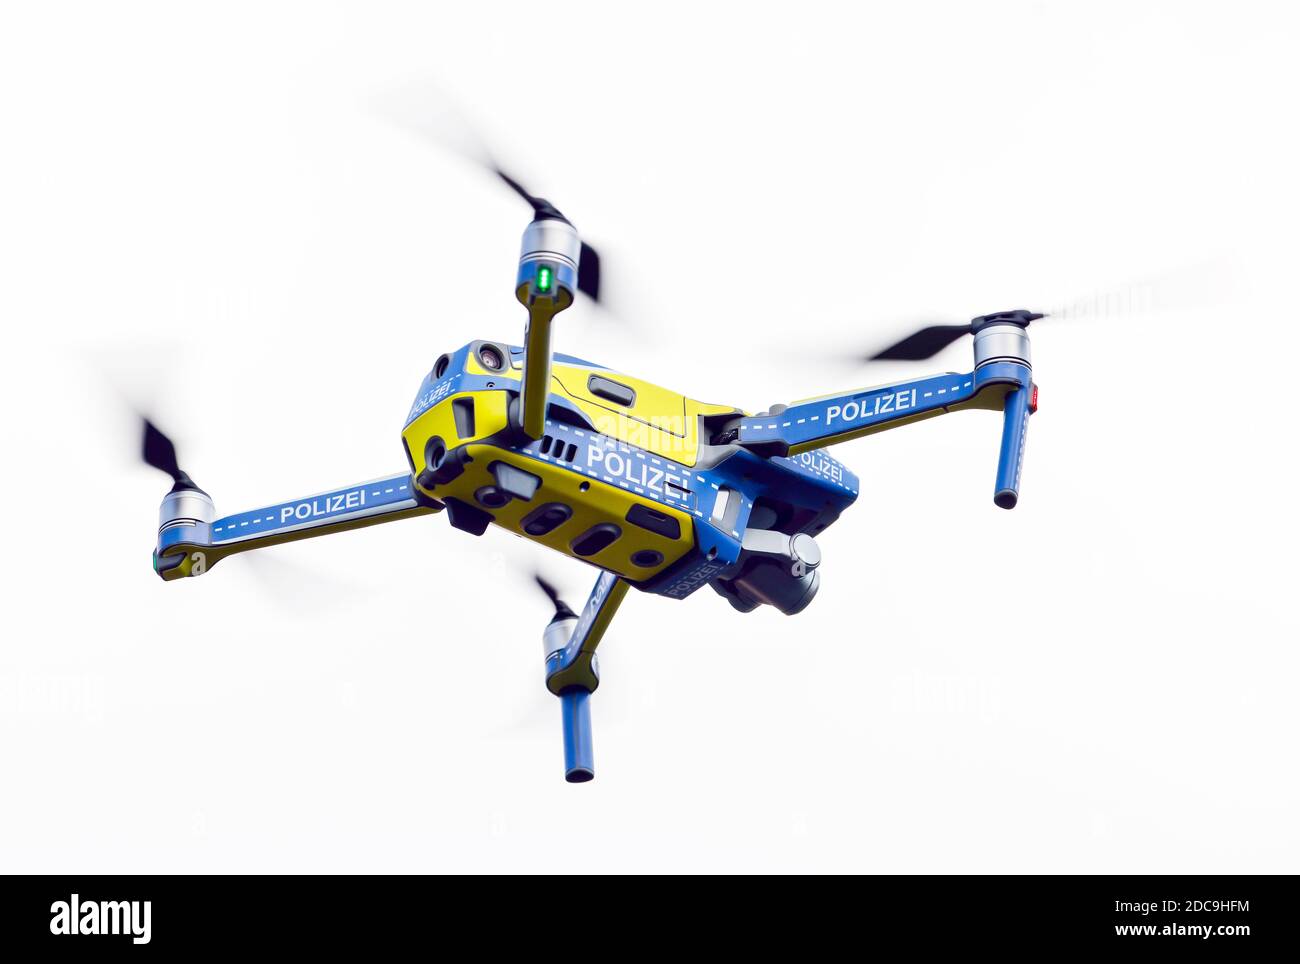 12.10.2020, Neuss, Renania Settentrionale-Vestfalia, Germania - droni nella polizia NRW, 106 droni per un milione di euro saranno utilizzati nel Nord Reno Foto Stock